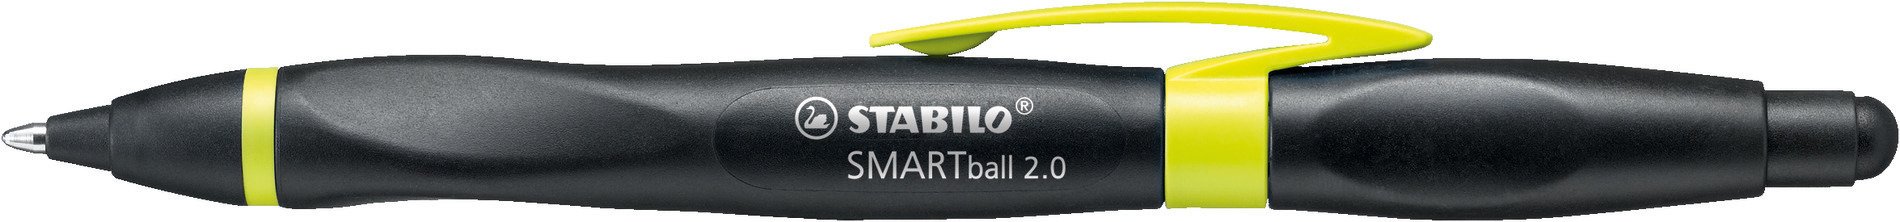 Kugelschreiber STABILO SMARTball 2.0